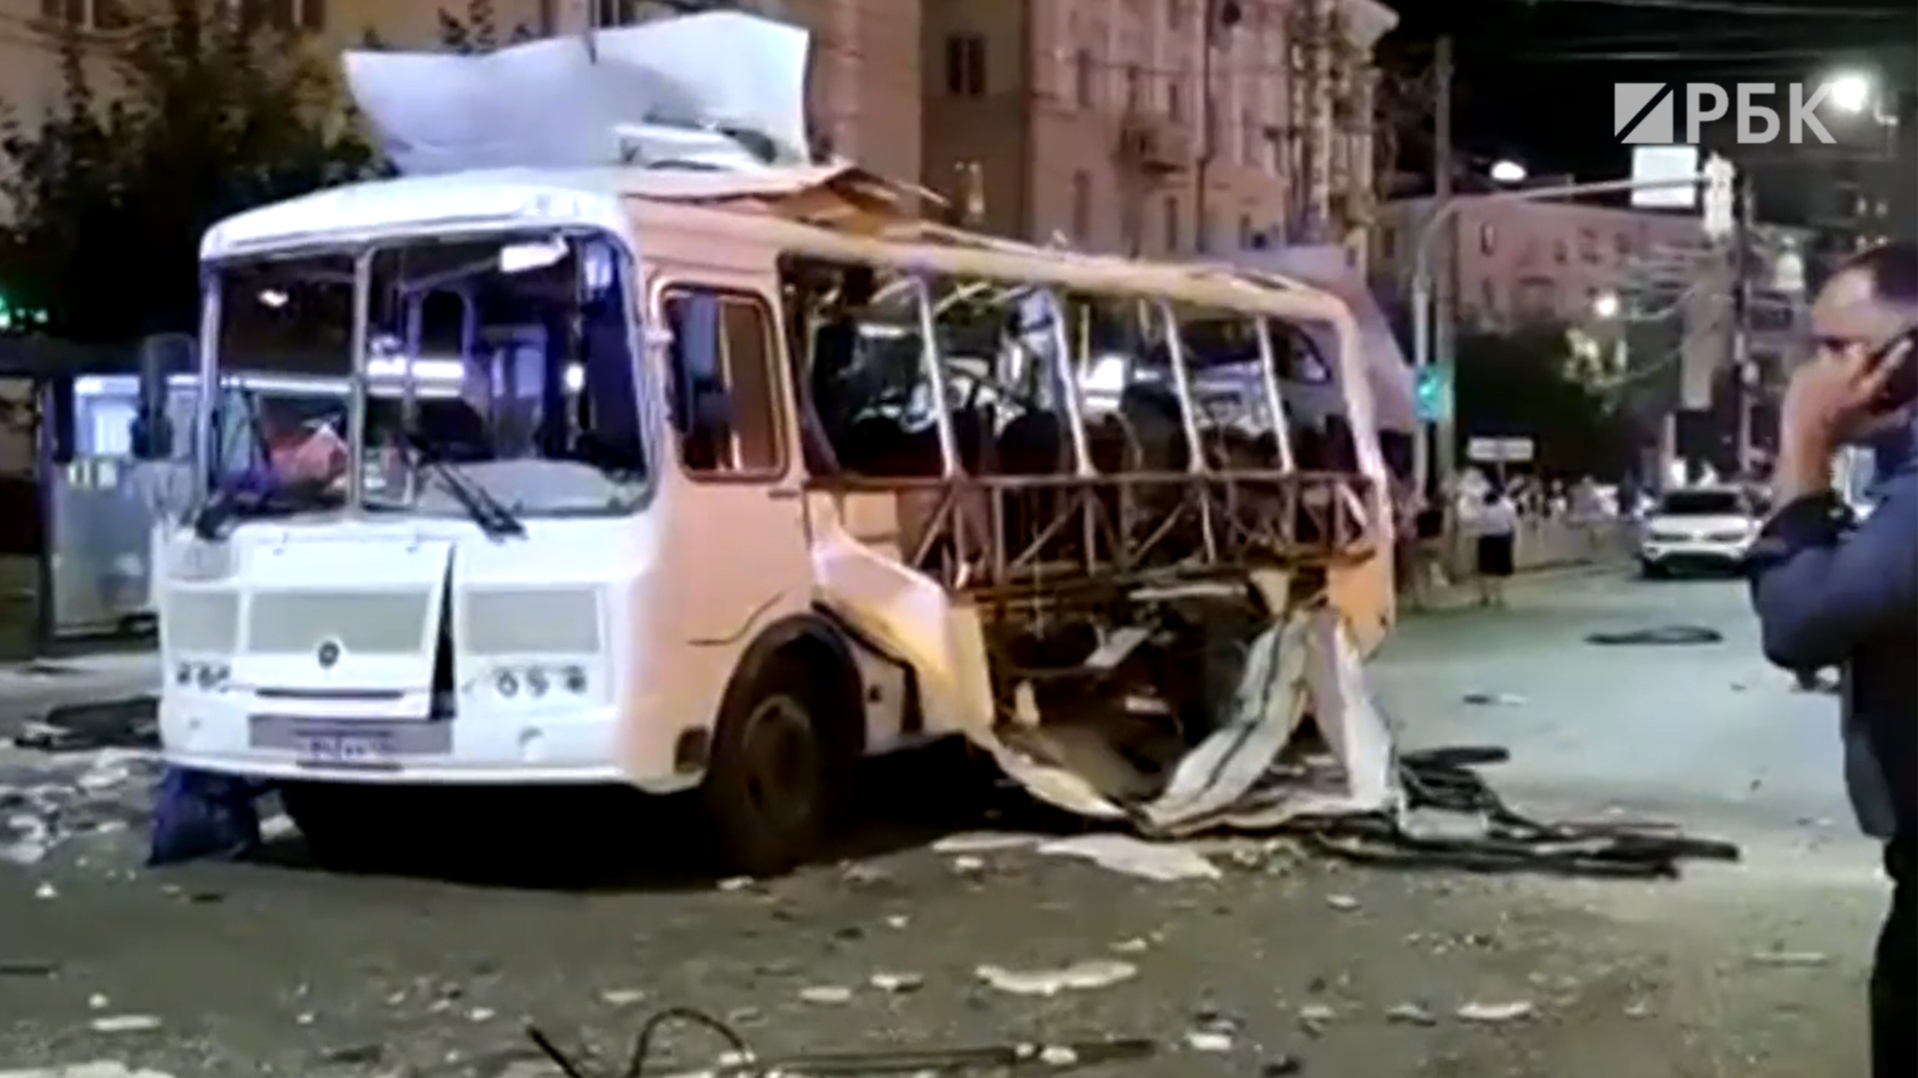 Число пострадавших при взрыве автобуса в Воронеже выросло до 26 человек